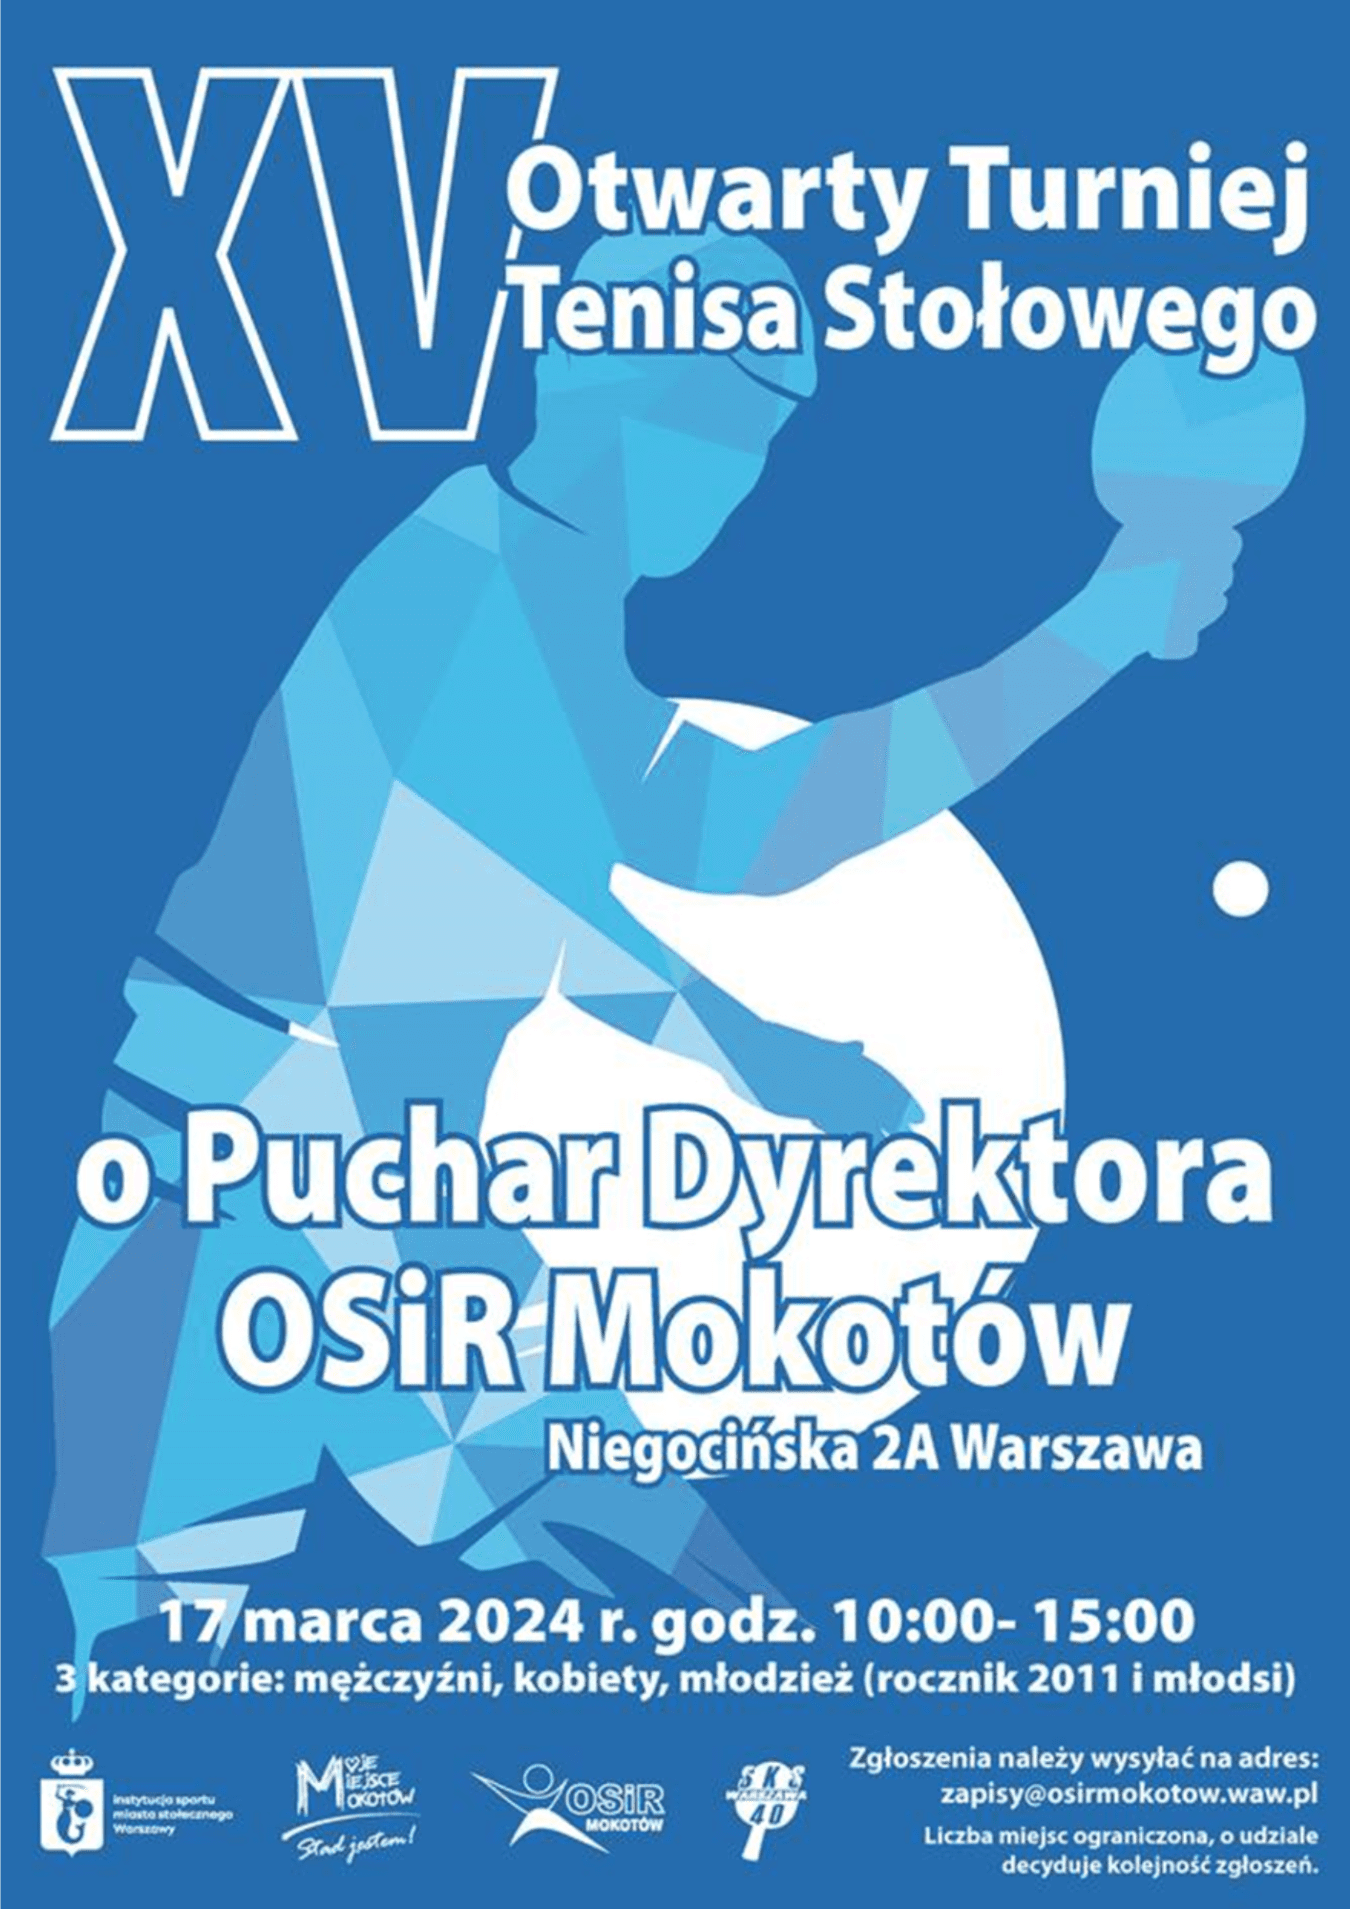 Plakat turnieju XV Otwarty Turniej Tenisa Stolowego o Puchar Dyrektora OSiR Mokotów (17 marca 2024)